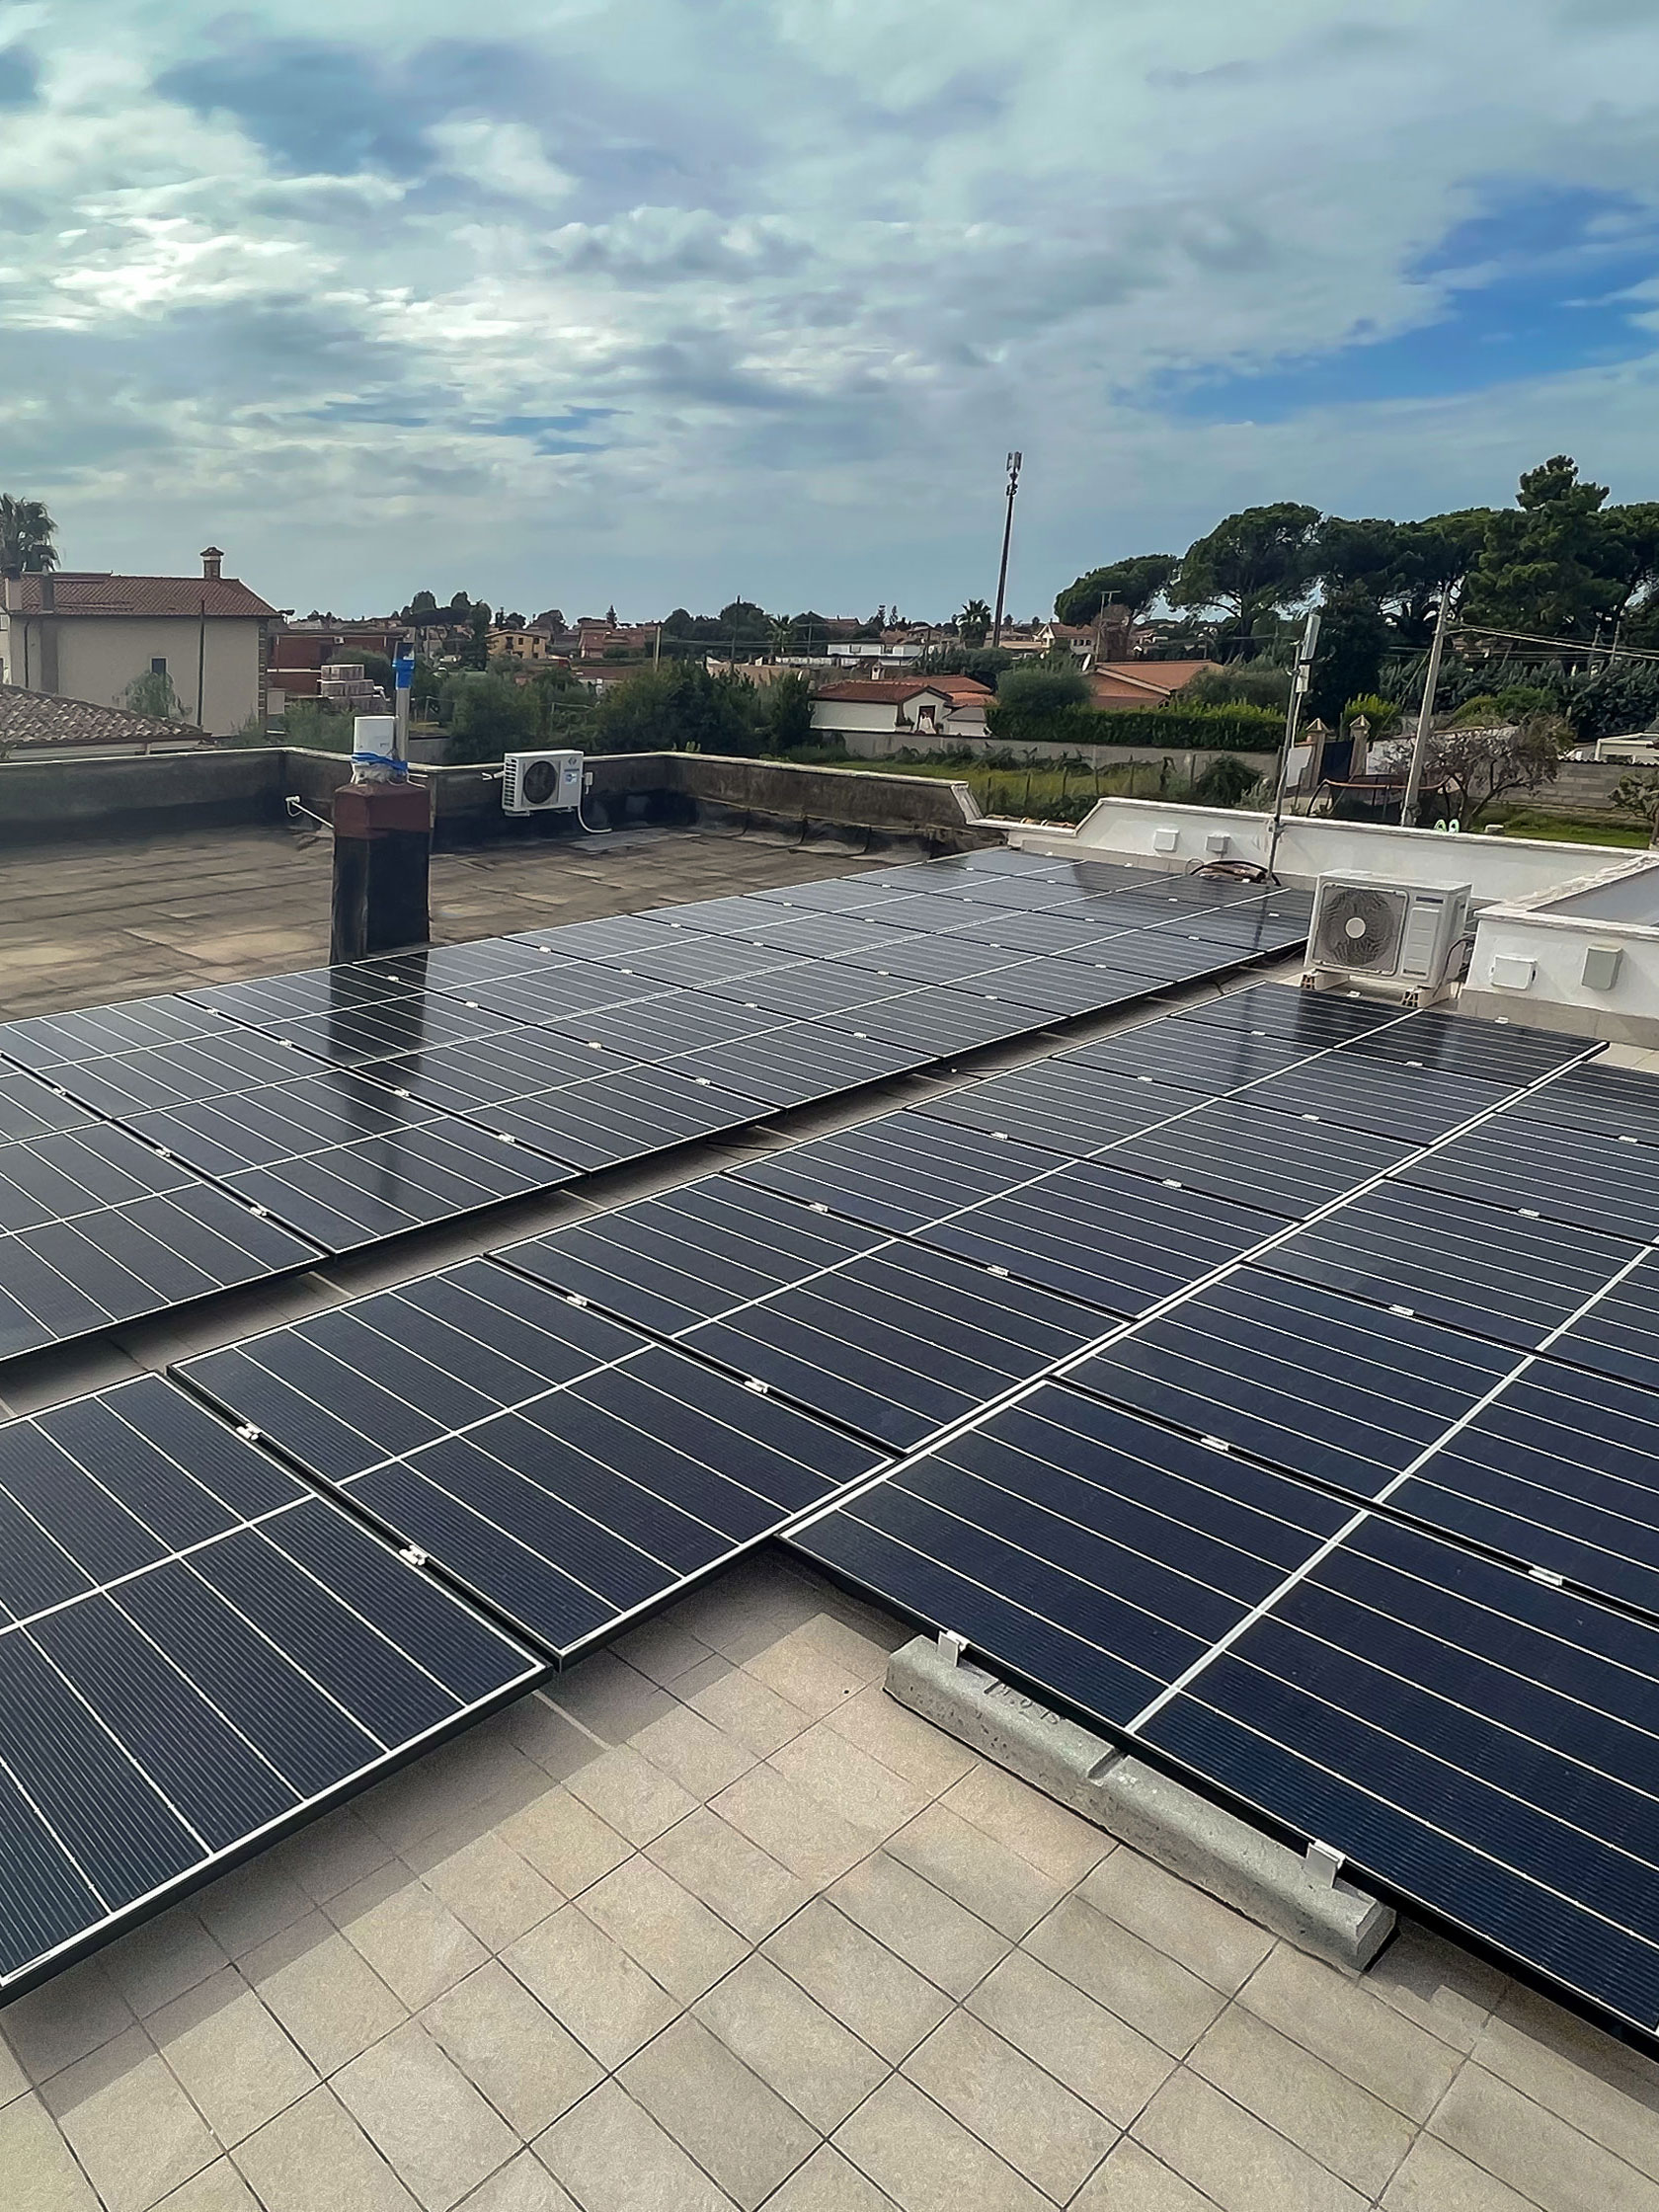 Impianto Fotovoltaico 13,65 kWp con ottimizzatori ed inverter SolarEdge + 3 batterie Tesla 42 kWh di accumulo installato ad Ardea, Roma - dmt solar impianti fotovoltaici partner tesla, maxeon sunpower, solaredge